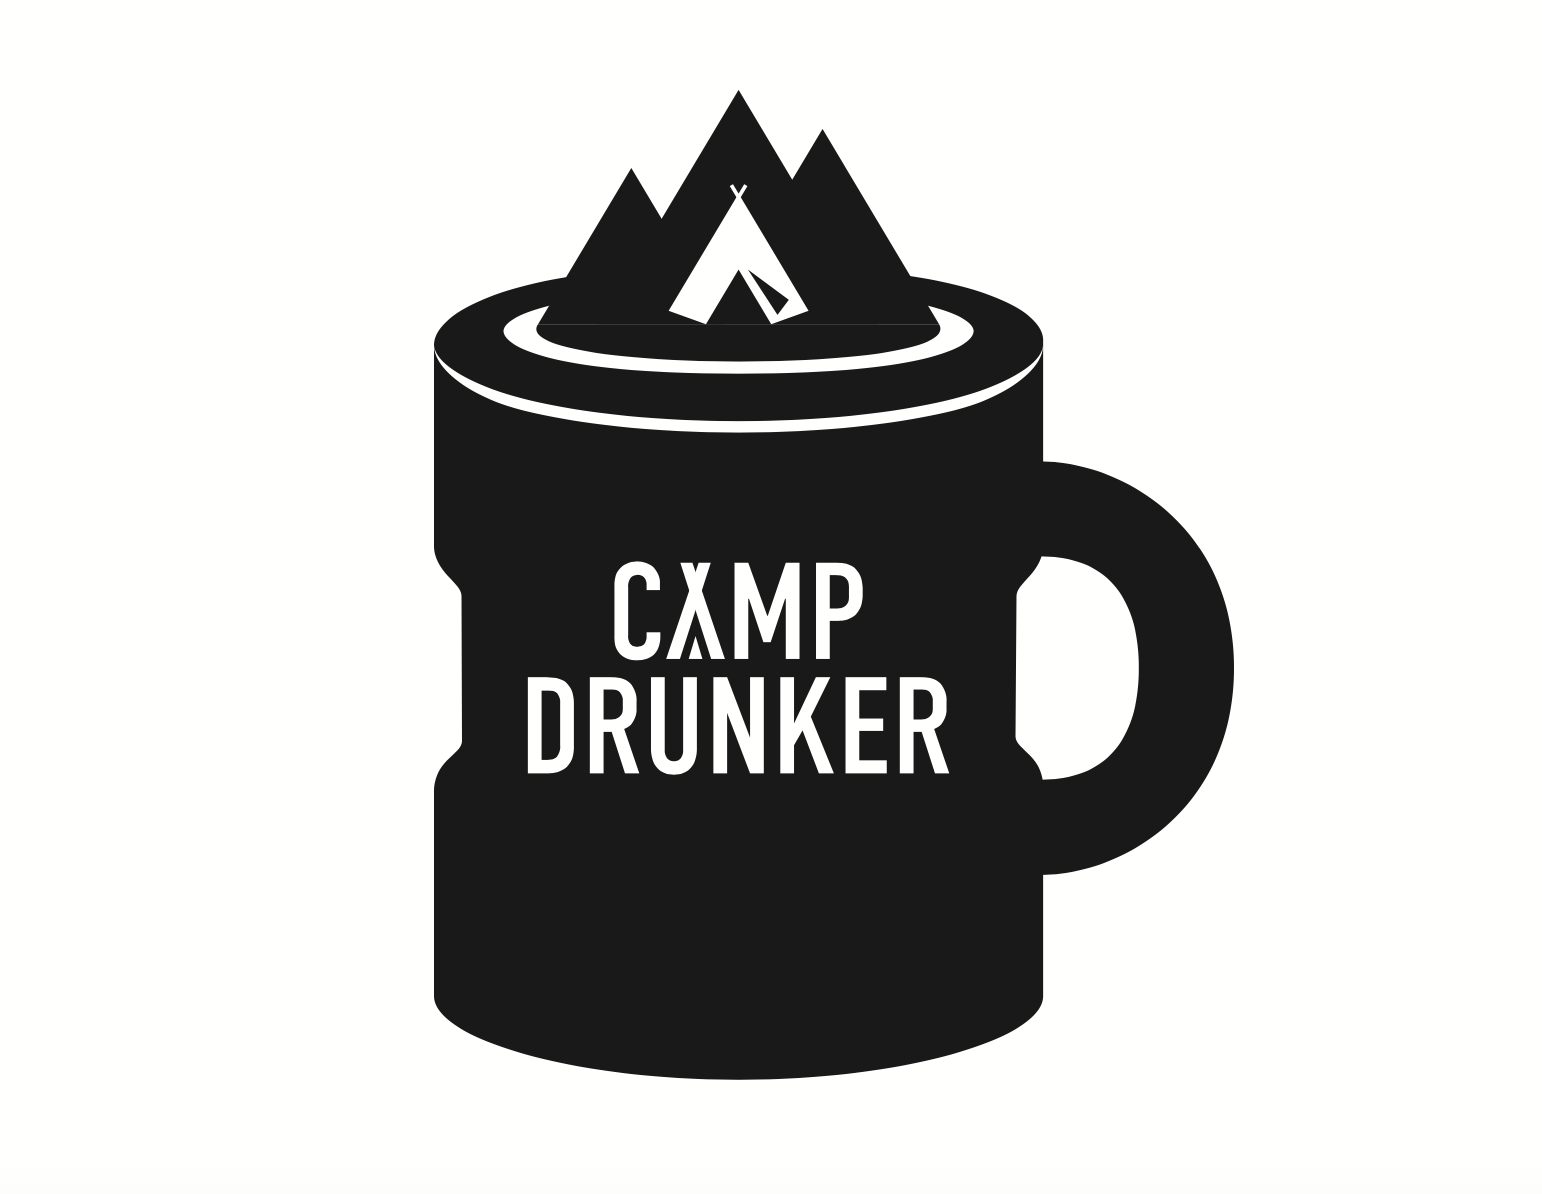 CampDrunker シンボルマーク！